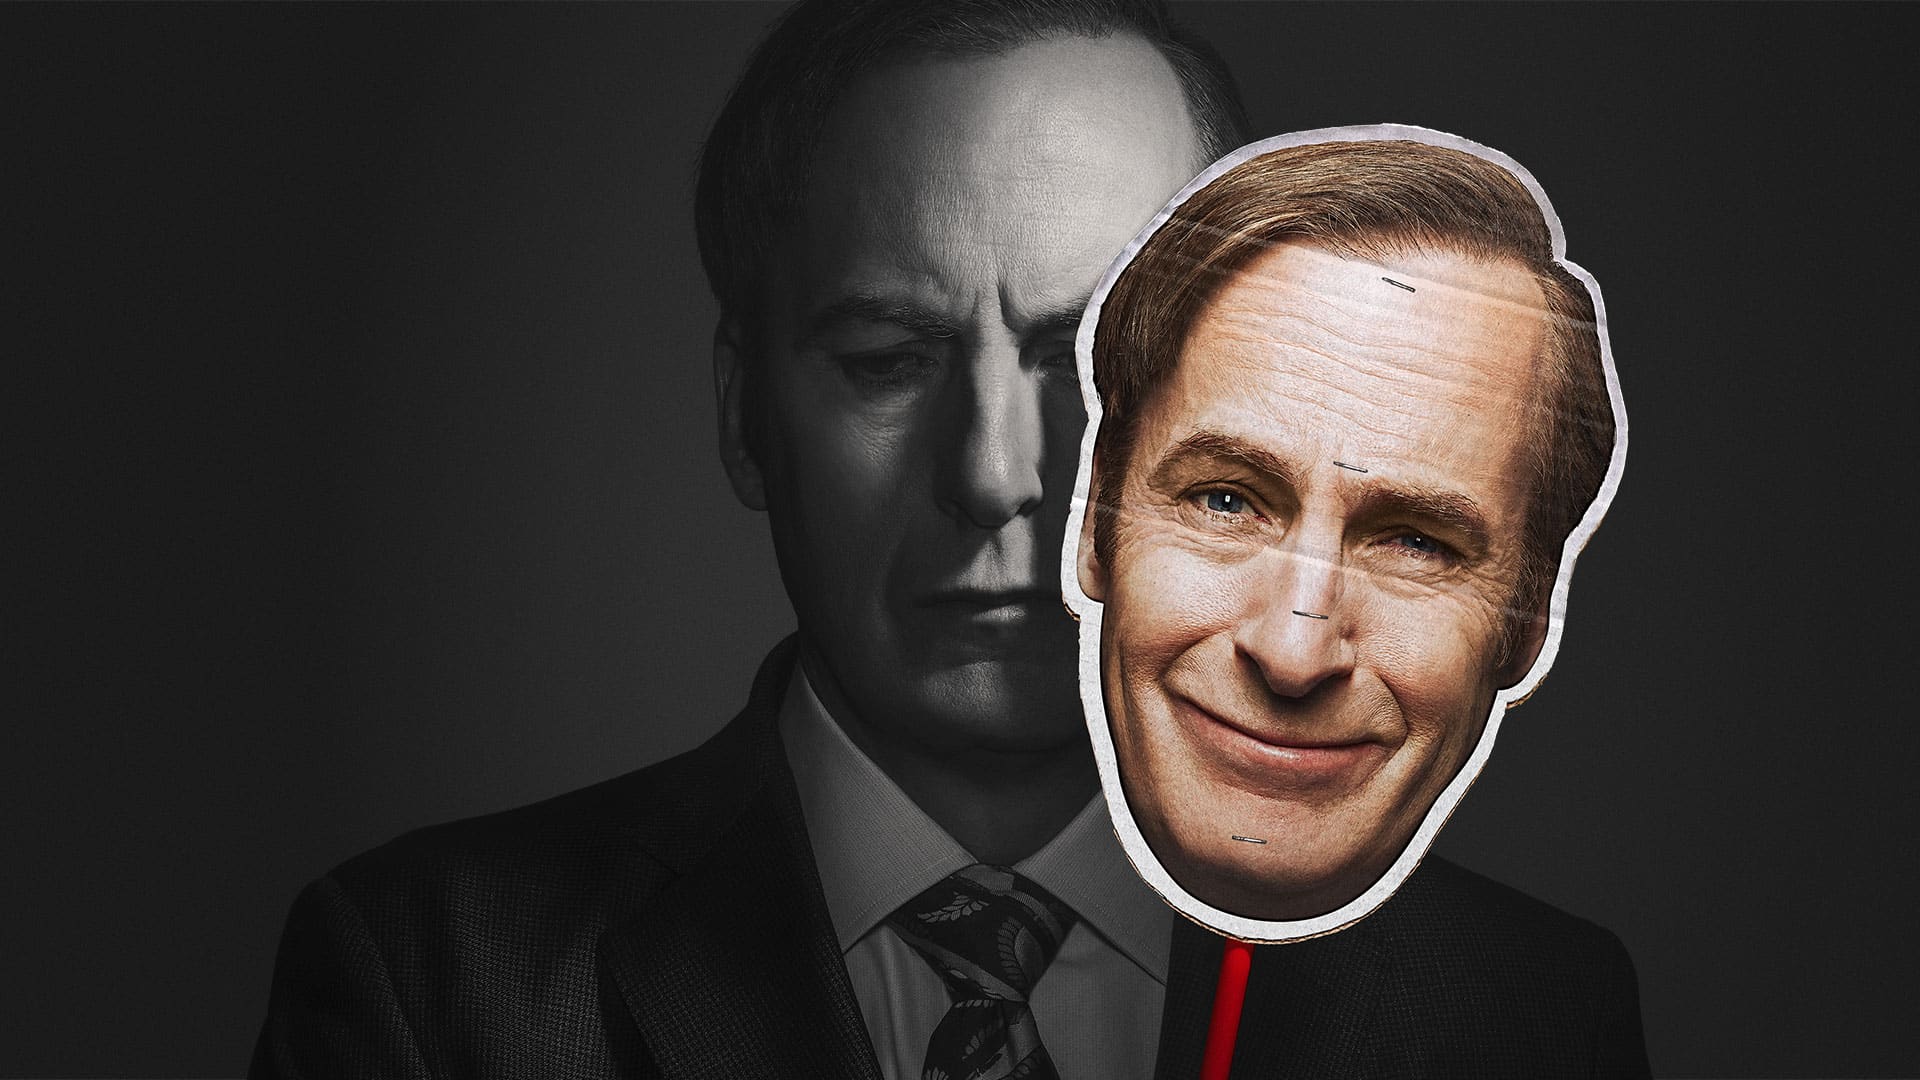 Better Call Saul: Bob Odenkirk portato d’urgenza in ospedale dopo collasso sul set